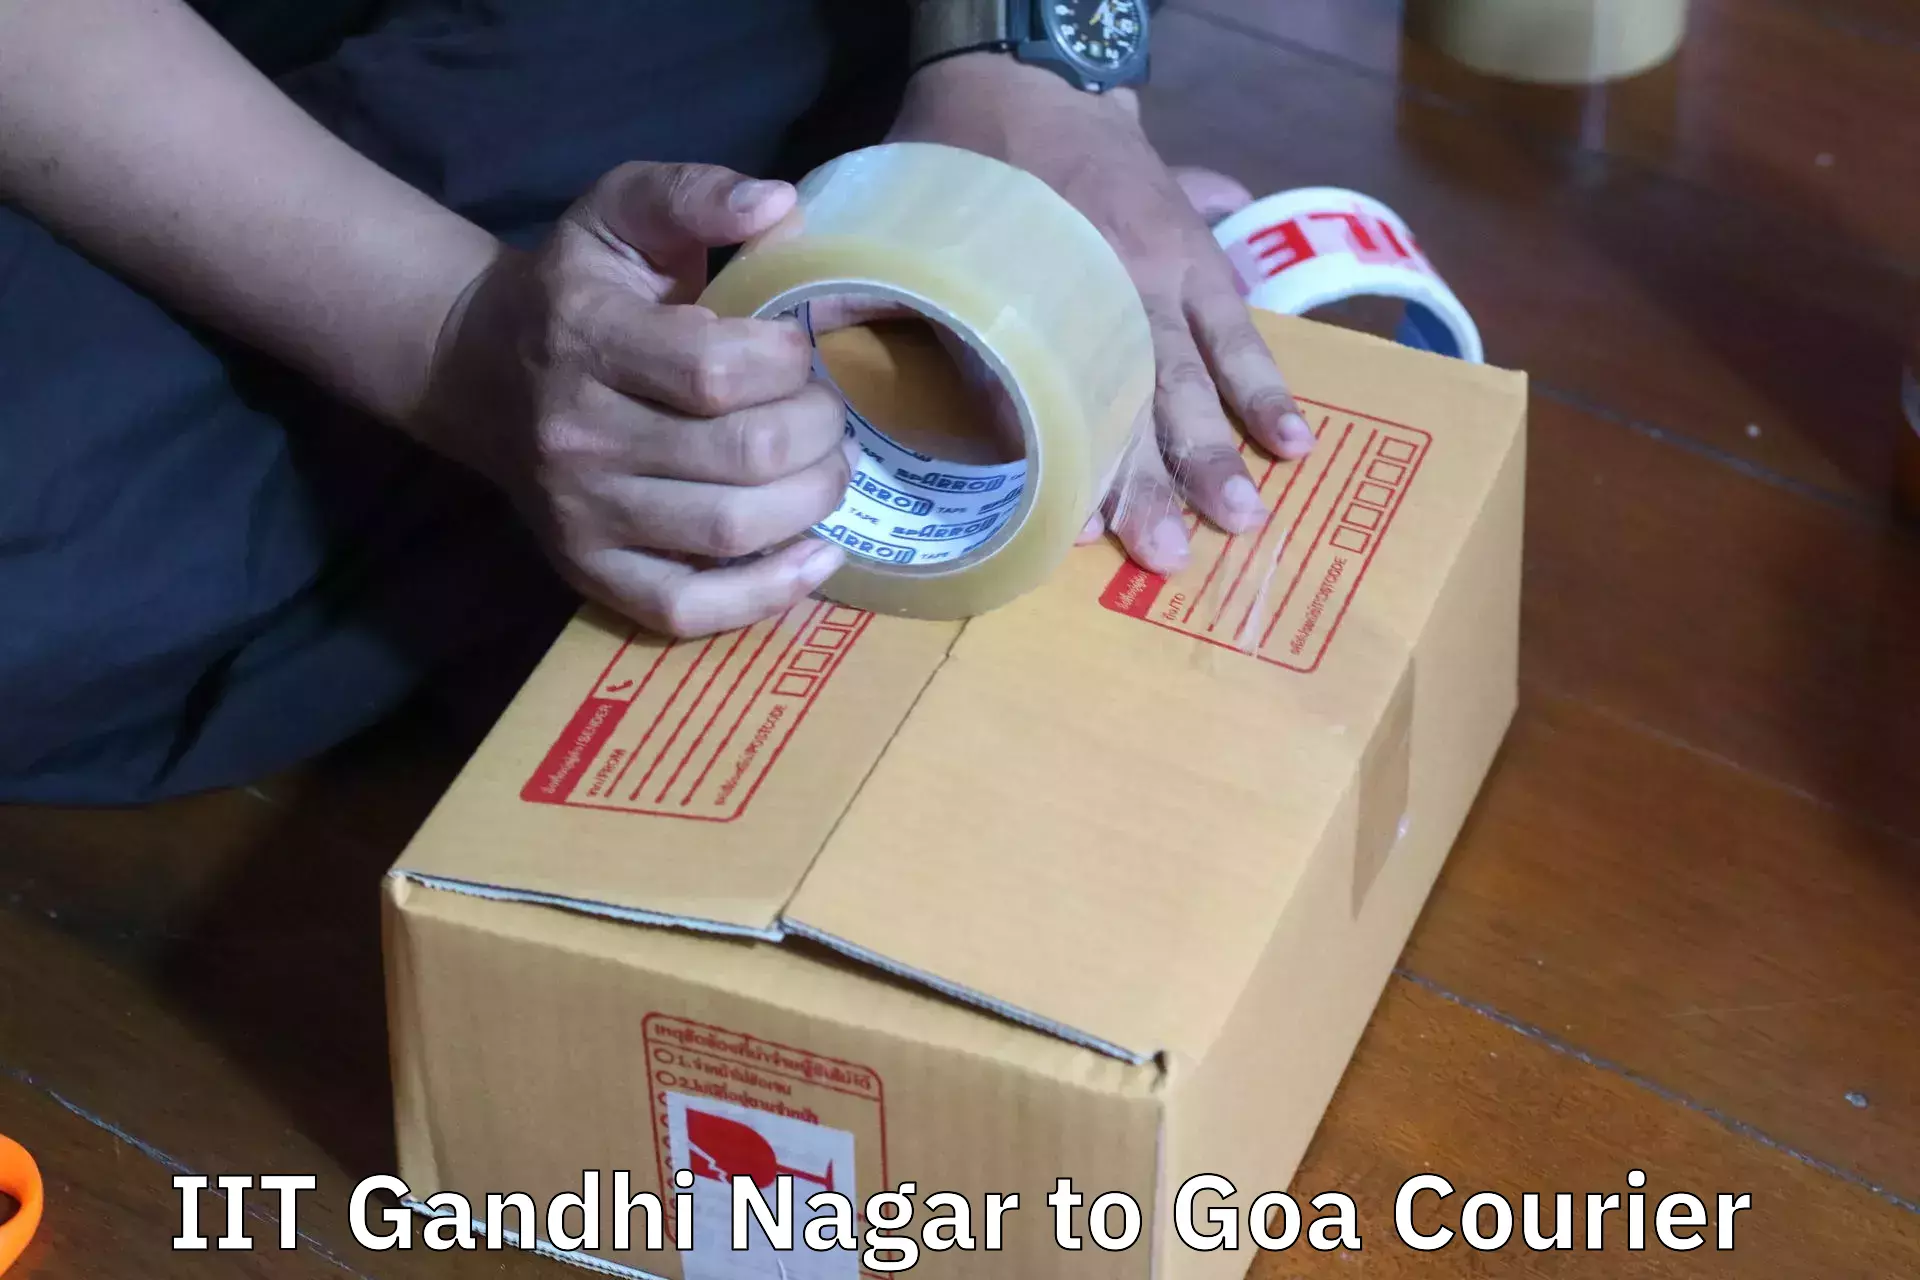 Furniture shipping services IIT Gandhi Nagar to Goa University